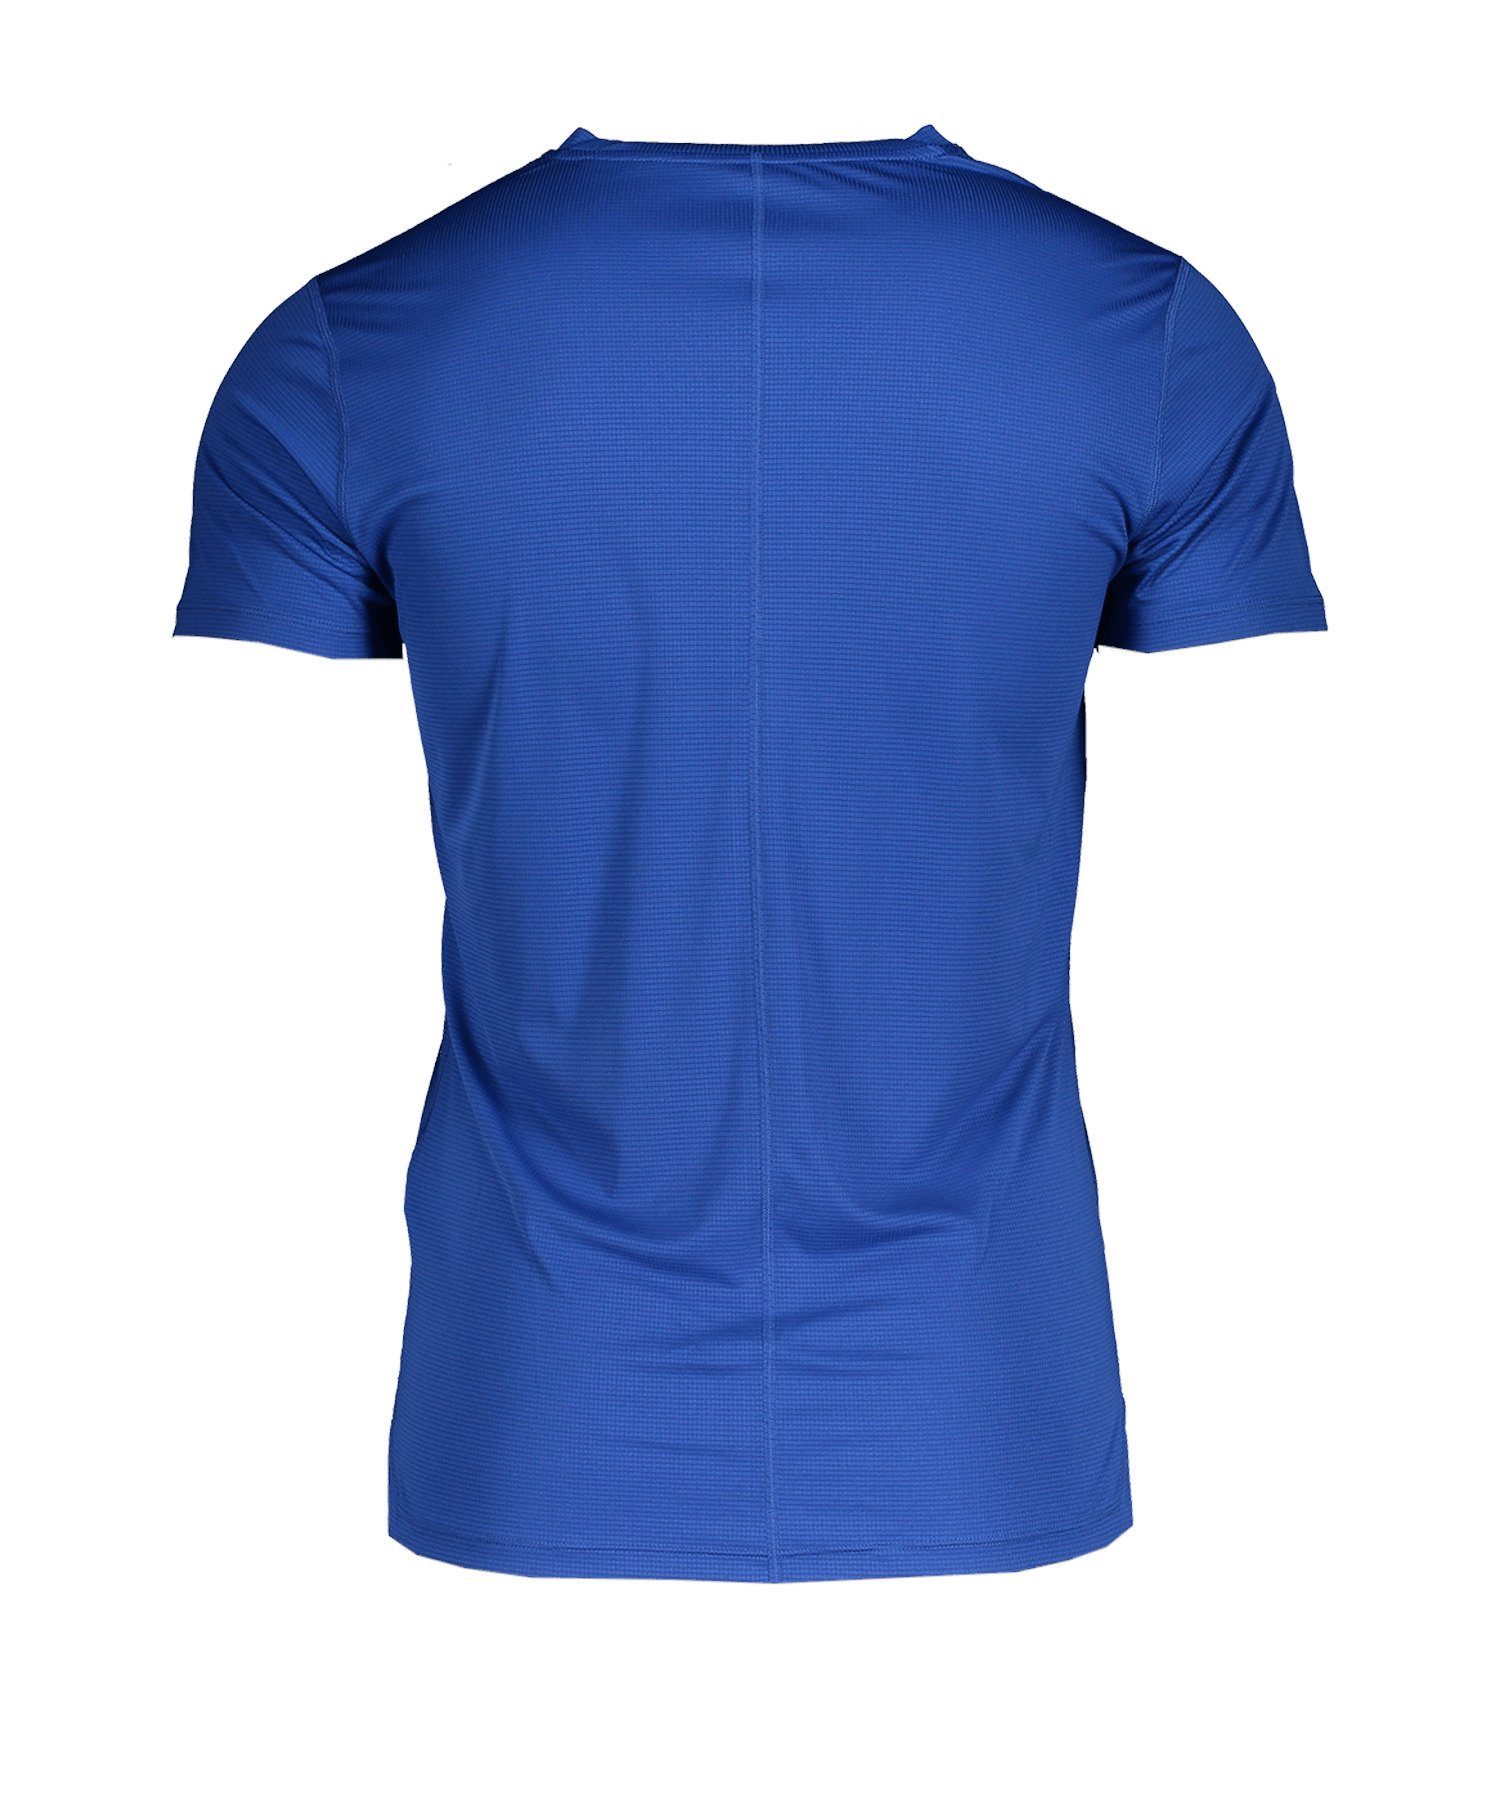 Asics Laufshirt default Running T-Shirt Silver blau